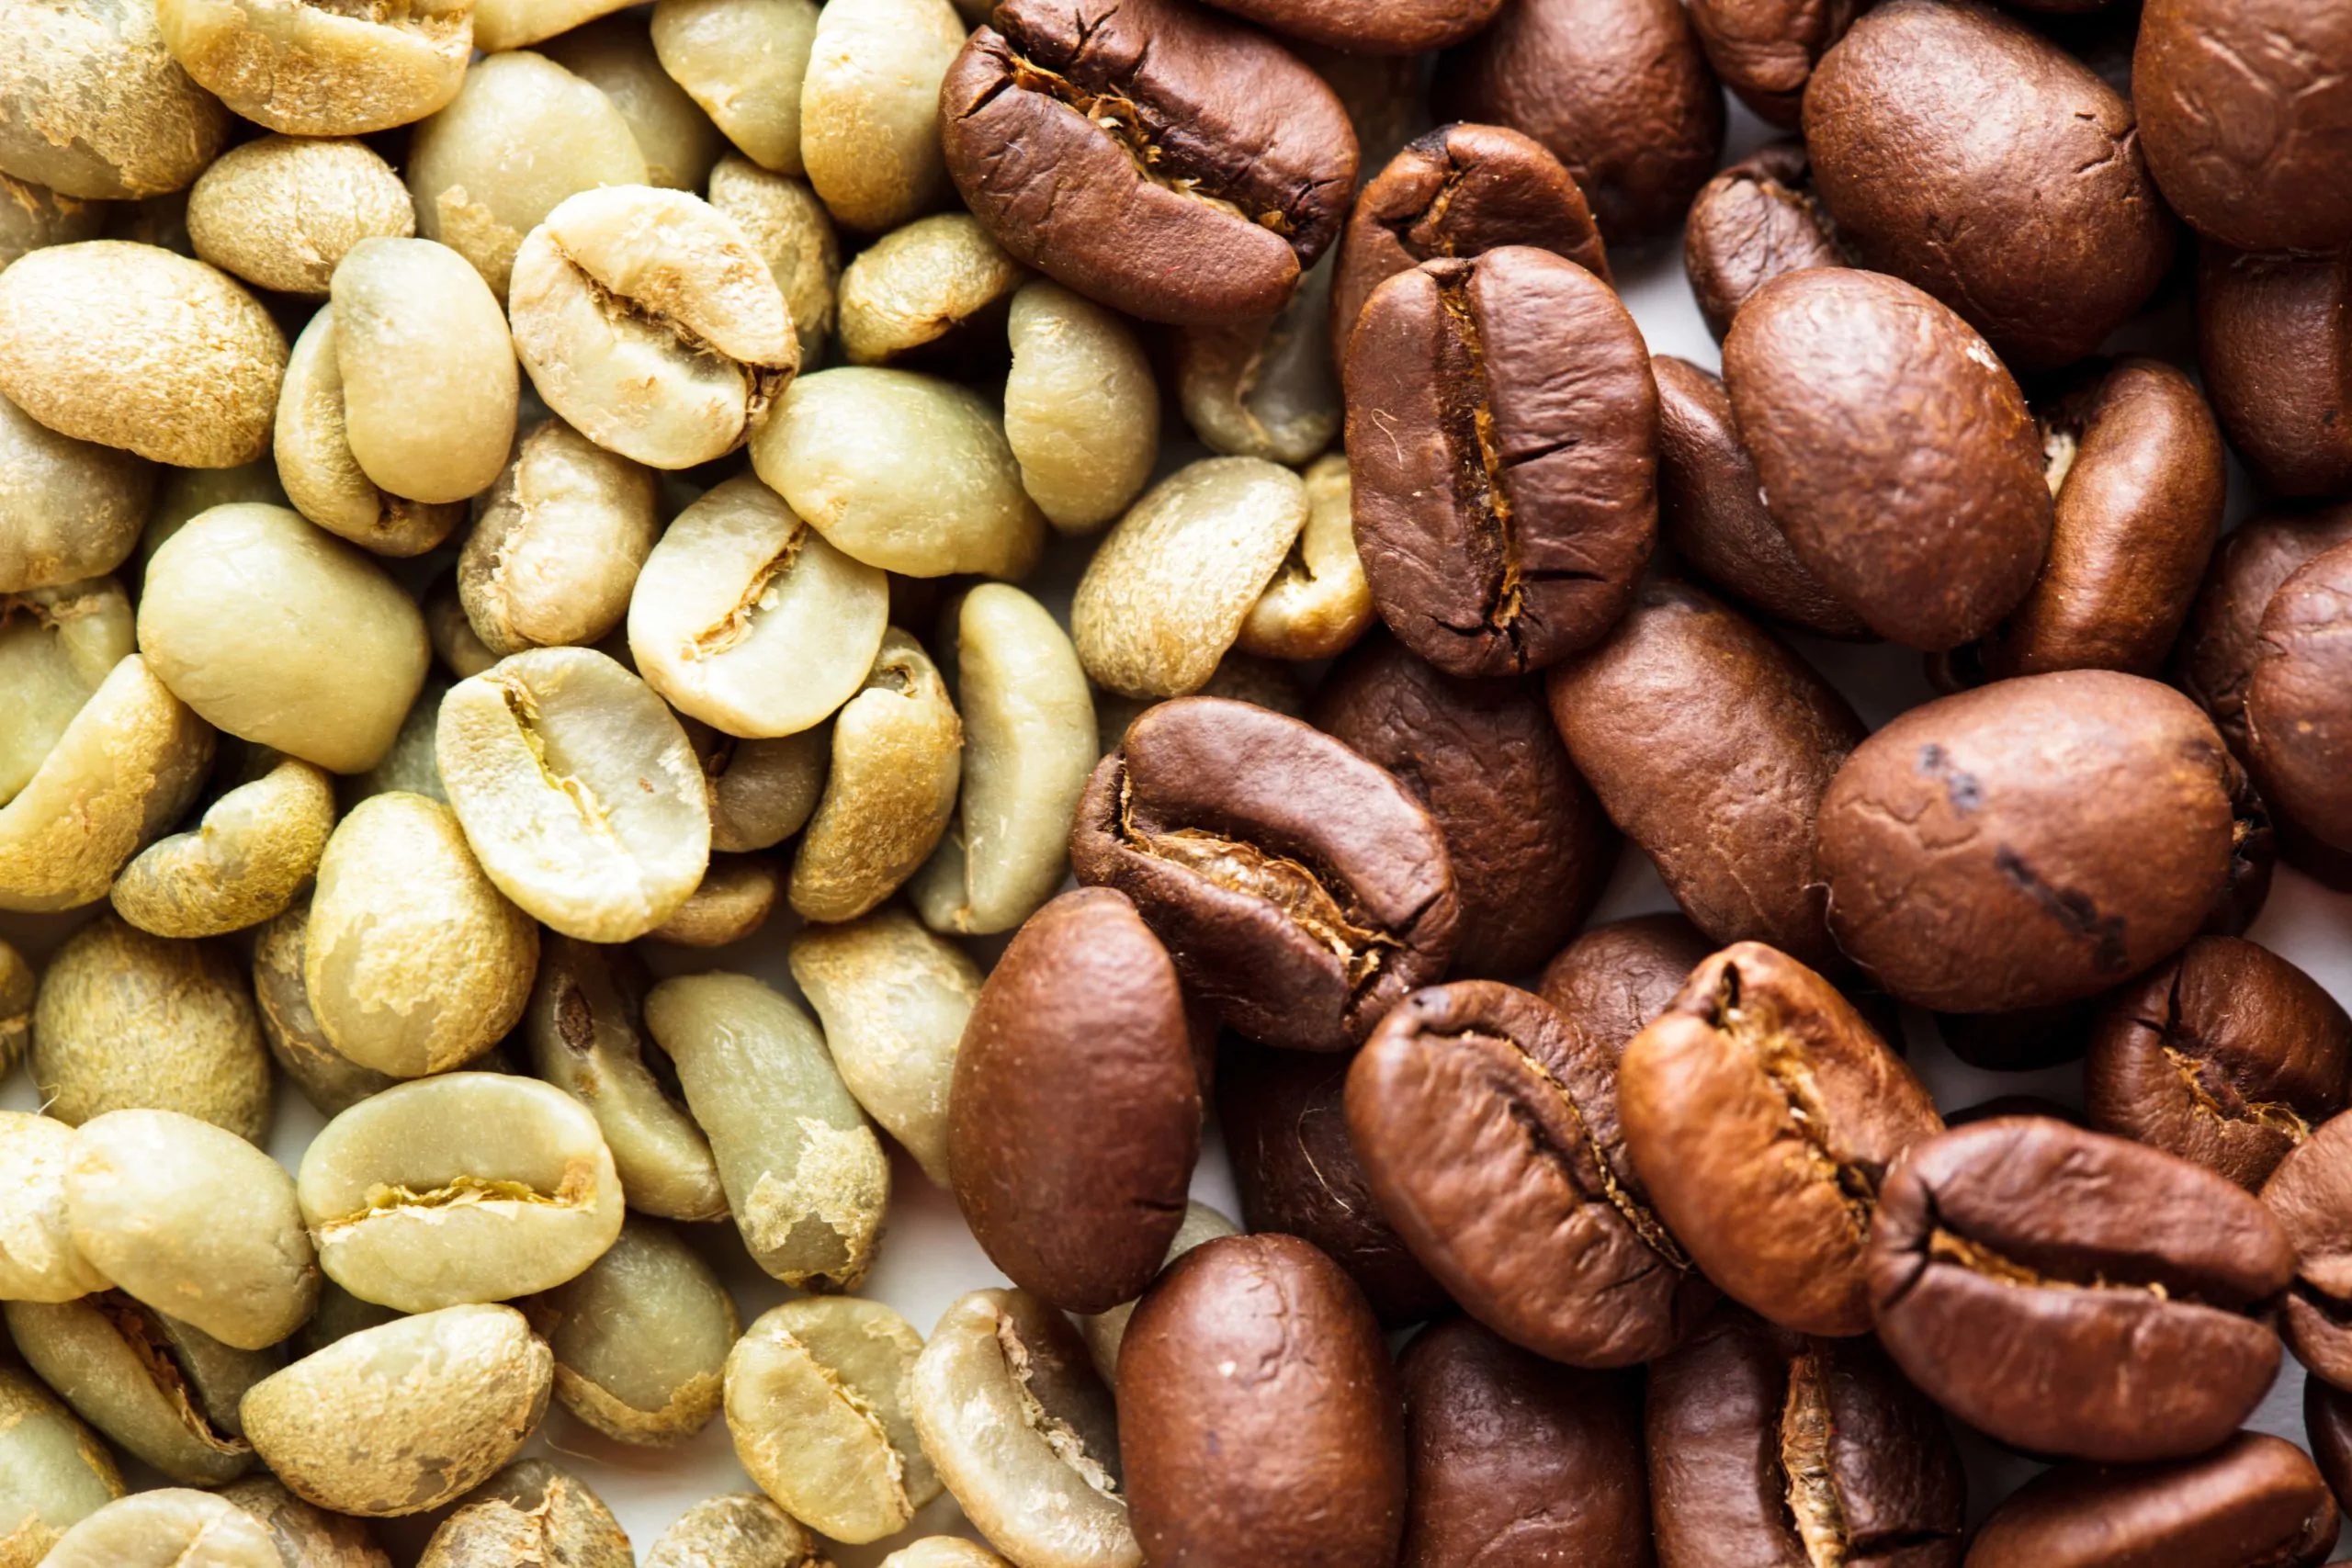 Coffee bean varieties.